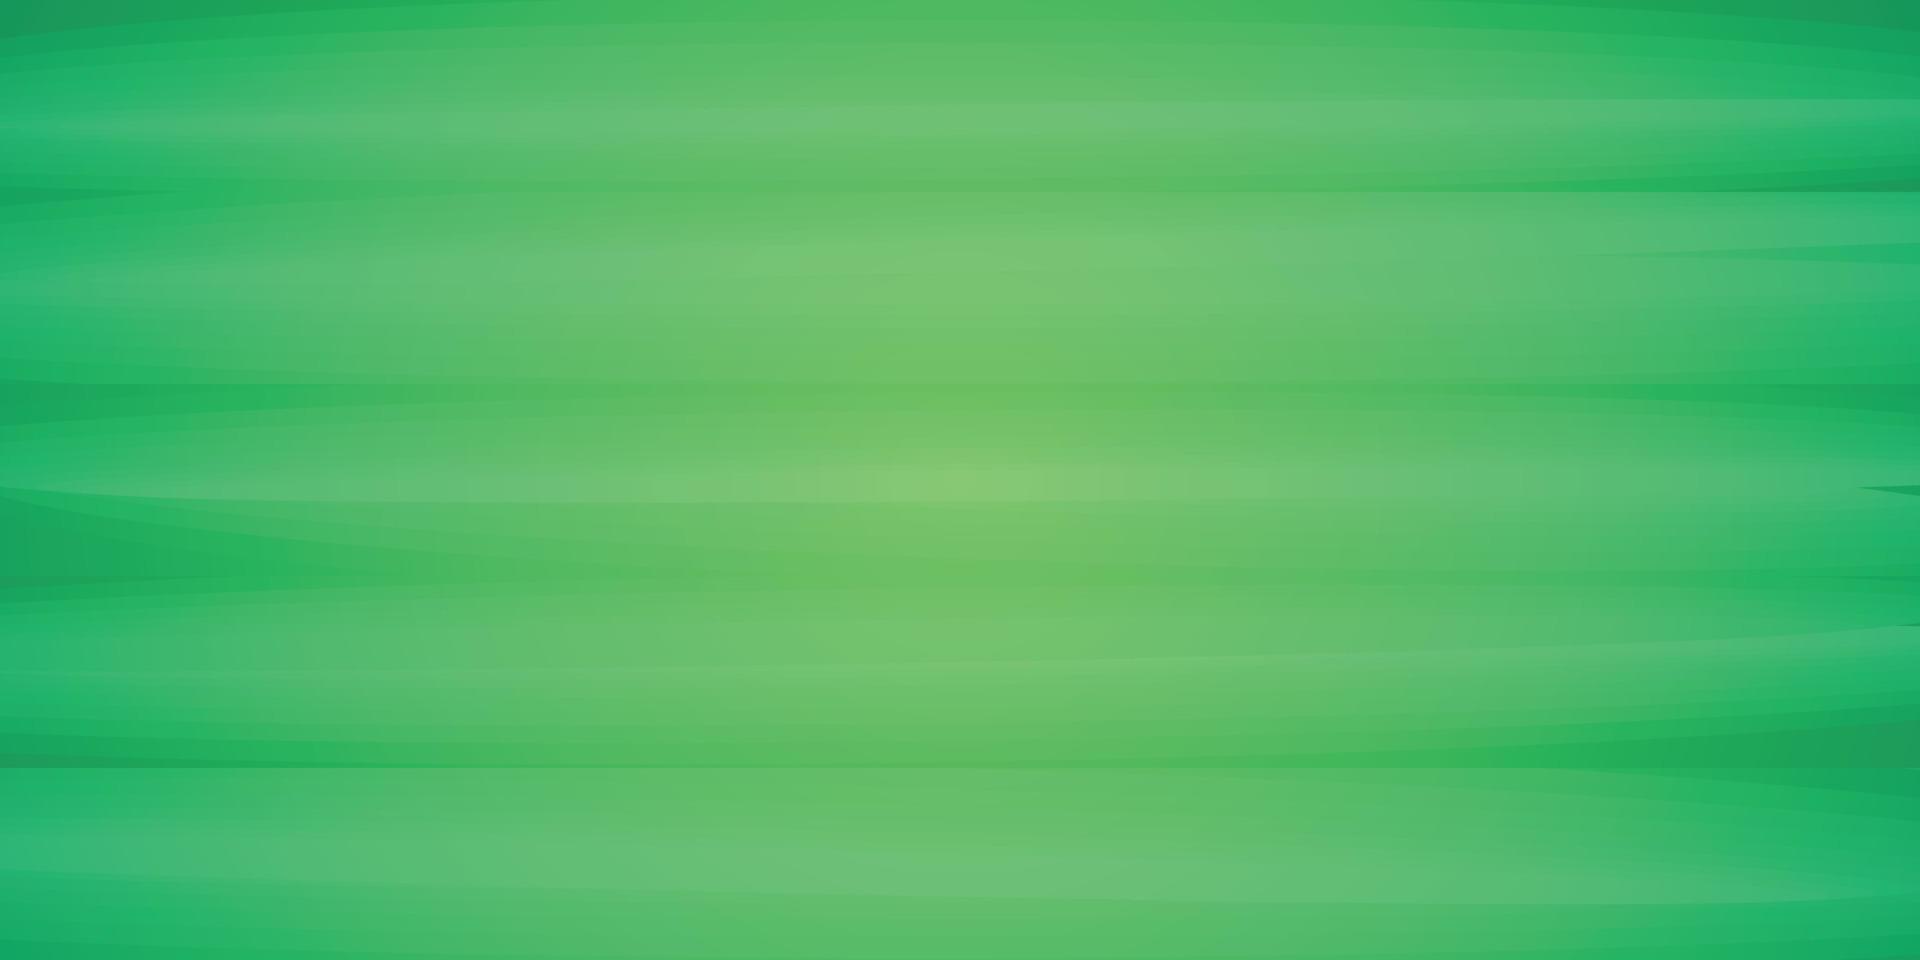 Sperrholz Holzbrett Natur grün Farbe Material abstrakt Hintergrund Textur Tapetenmuster nahtlose Vektorillustration vektor